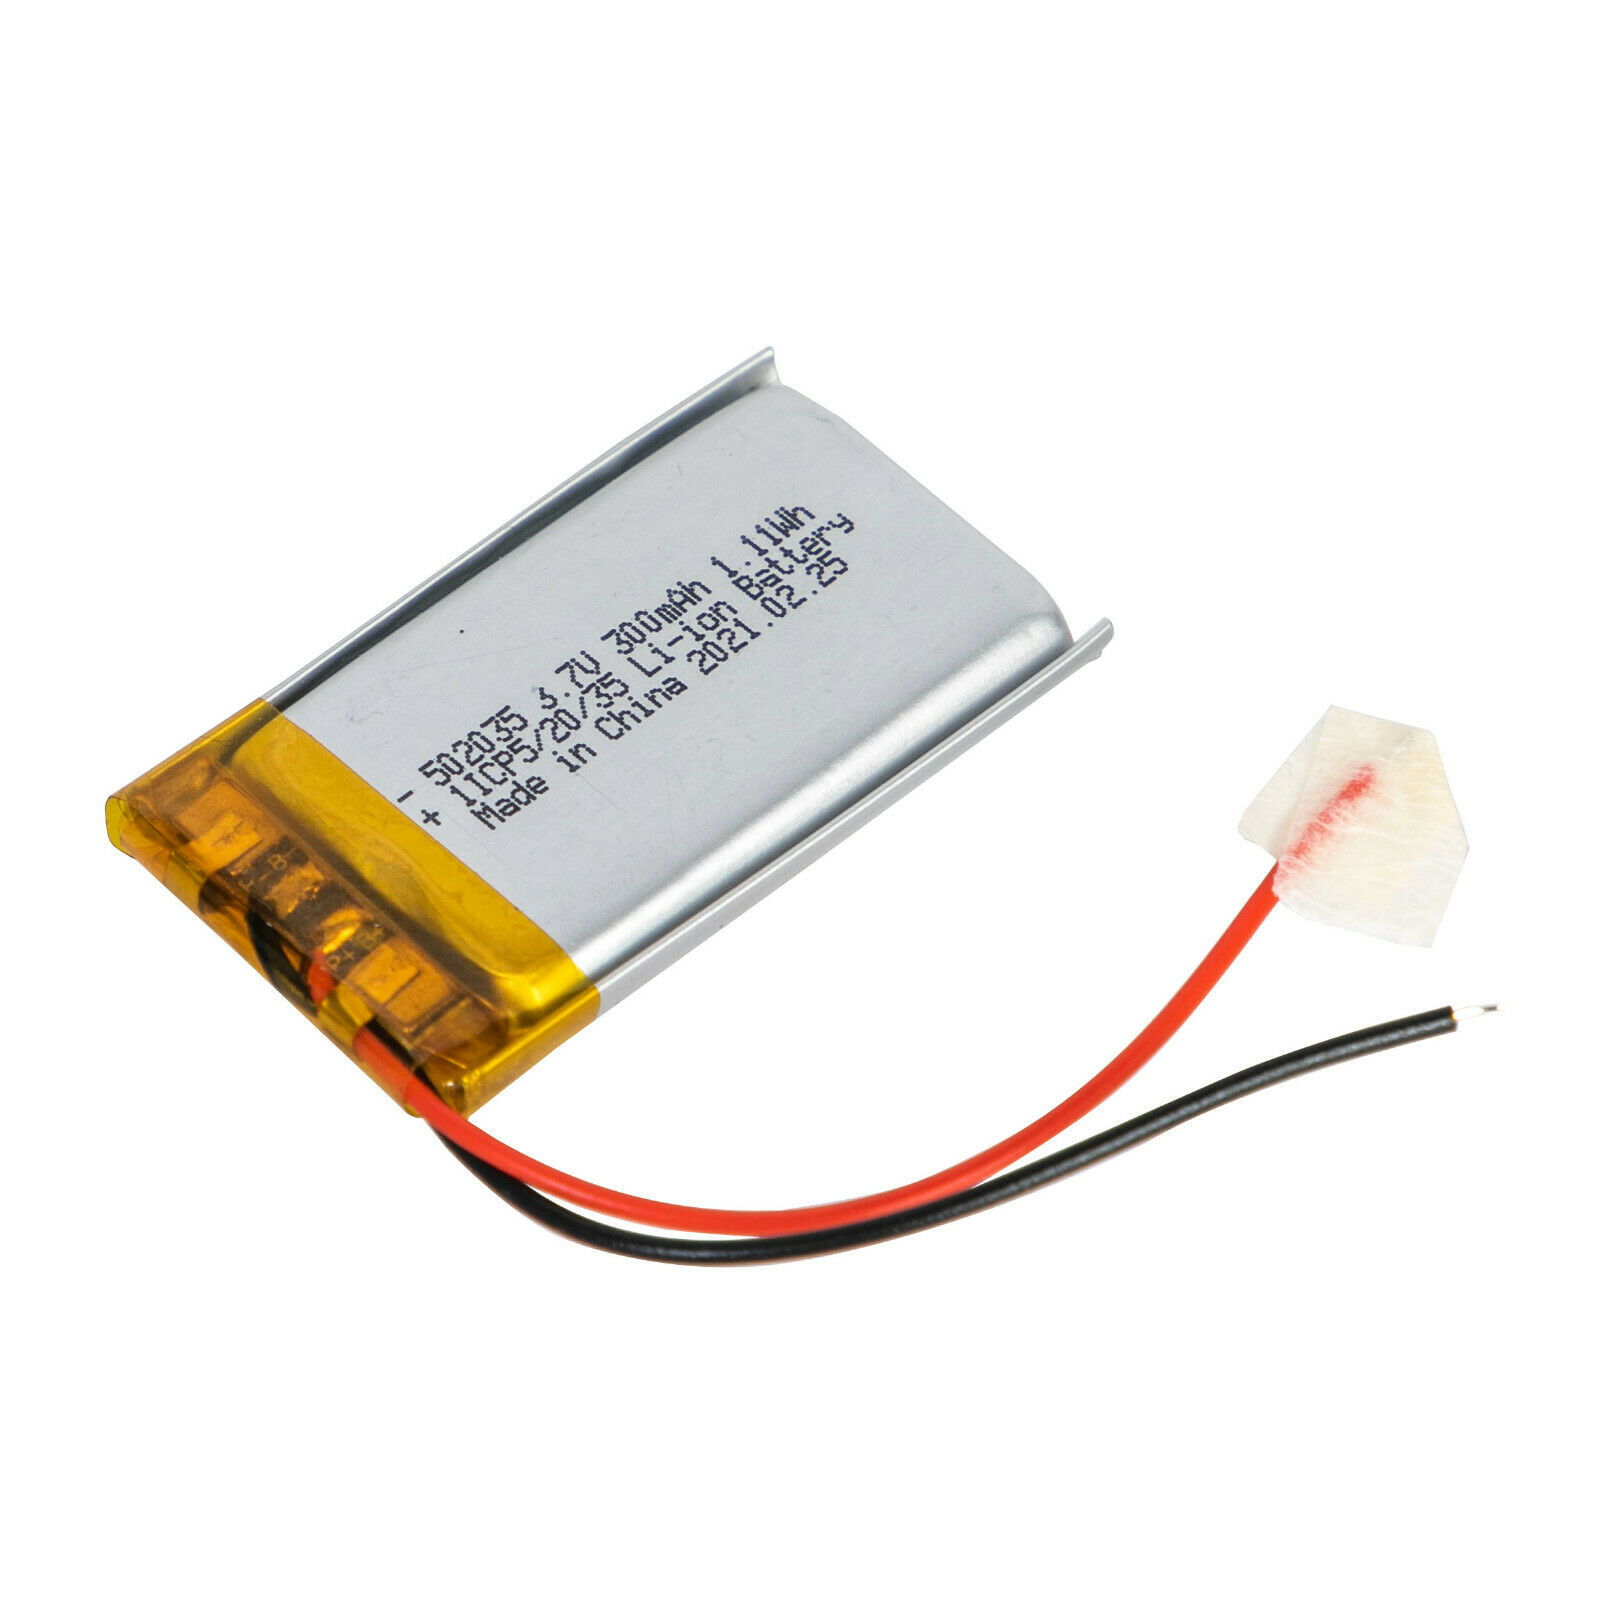 Аккумуляторы для дисплеев Bosch eBike intuvia 502035 батарея 3.7В 300мАч